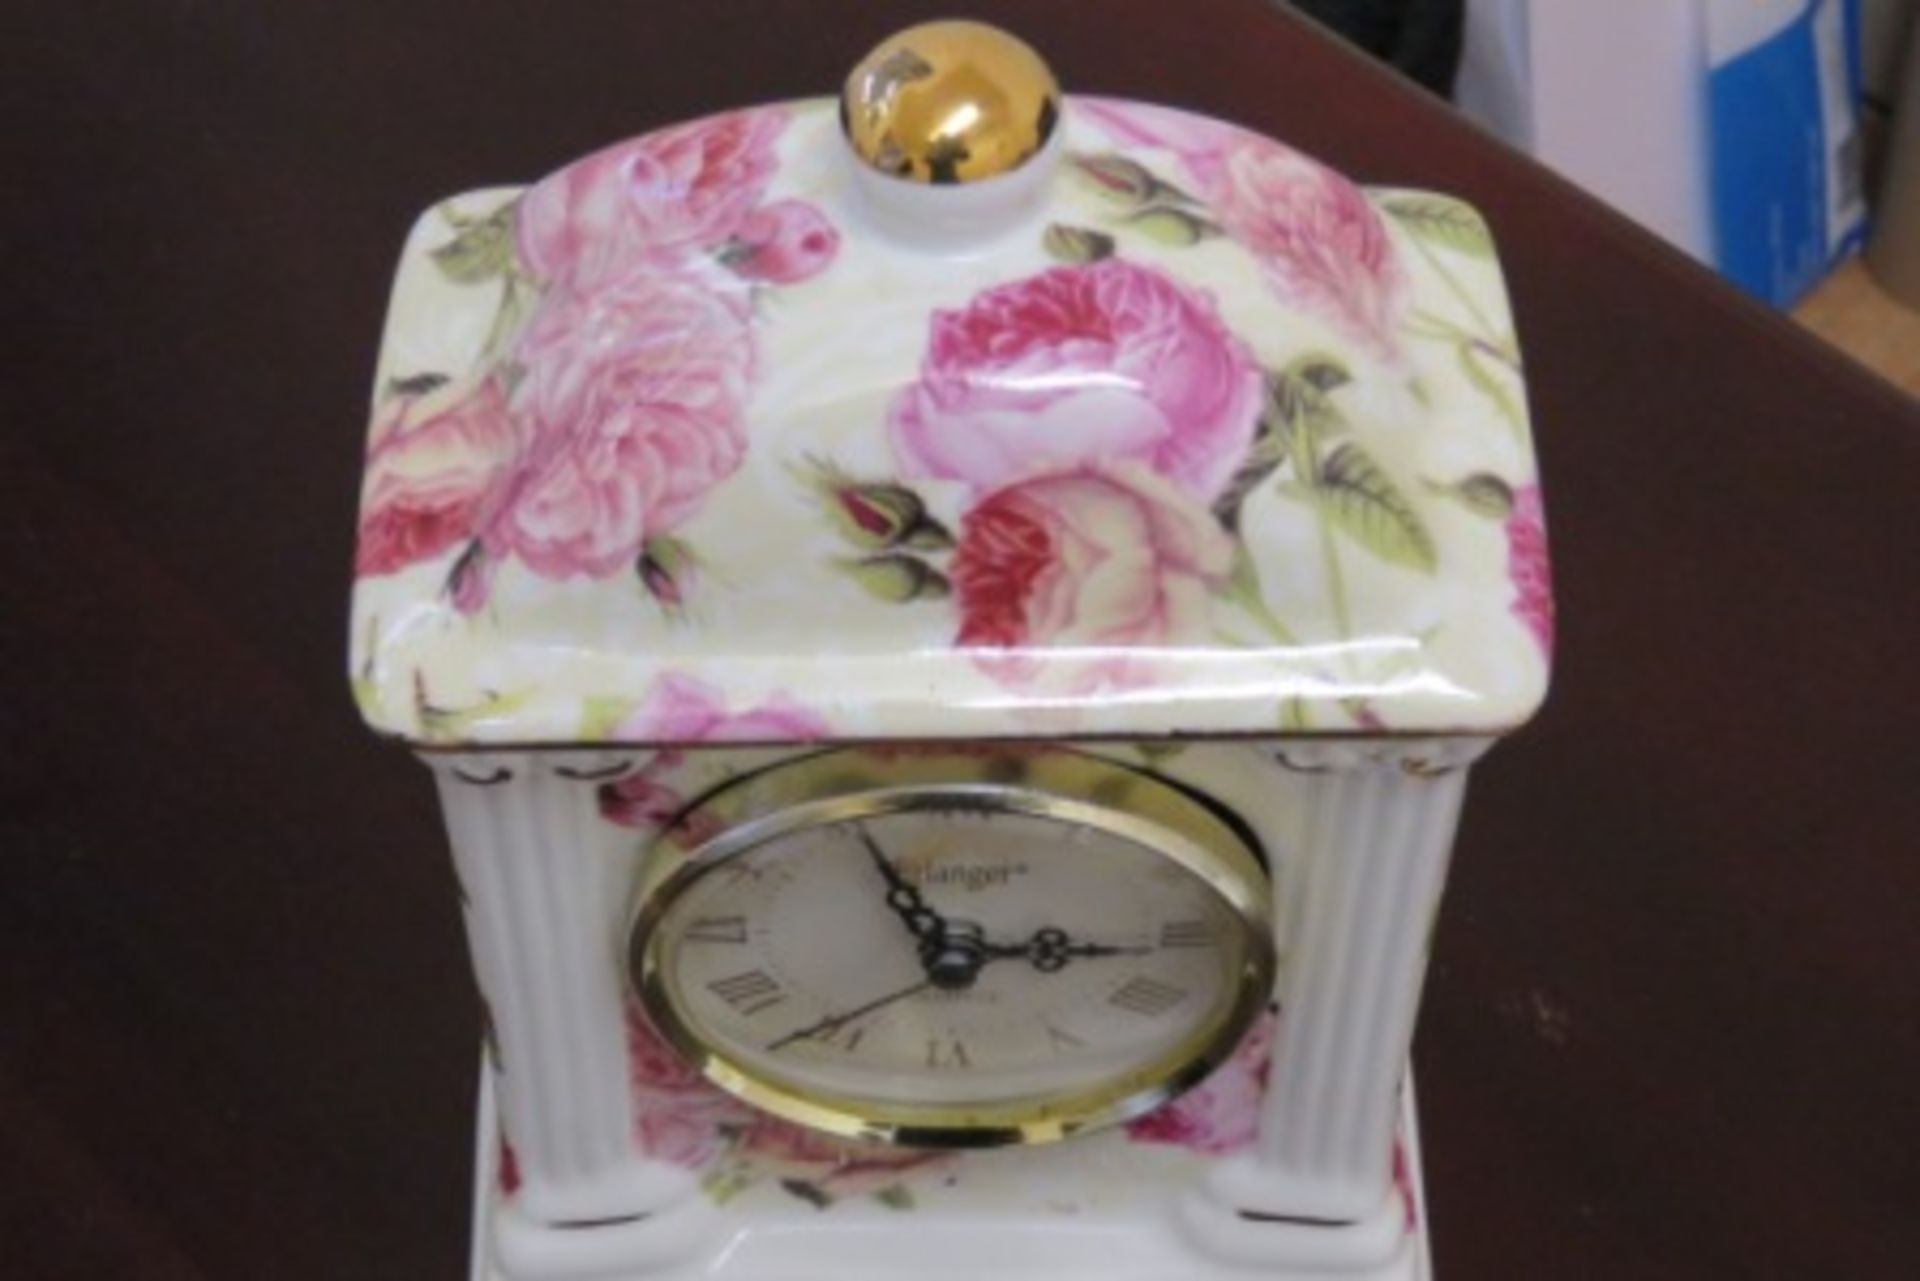 Erlanger Quartz Mantle Clock In Porcelain - Working Order - Image 2 of 2